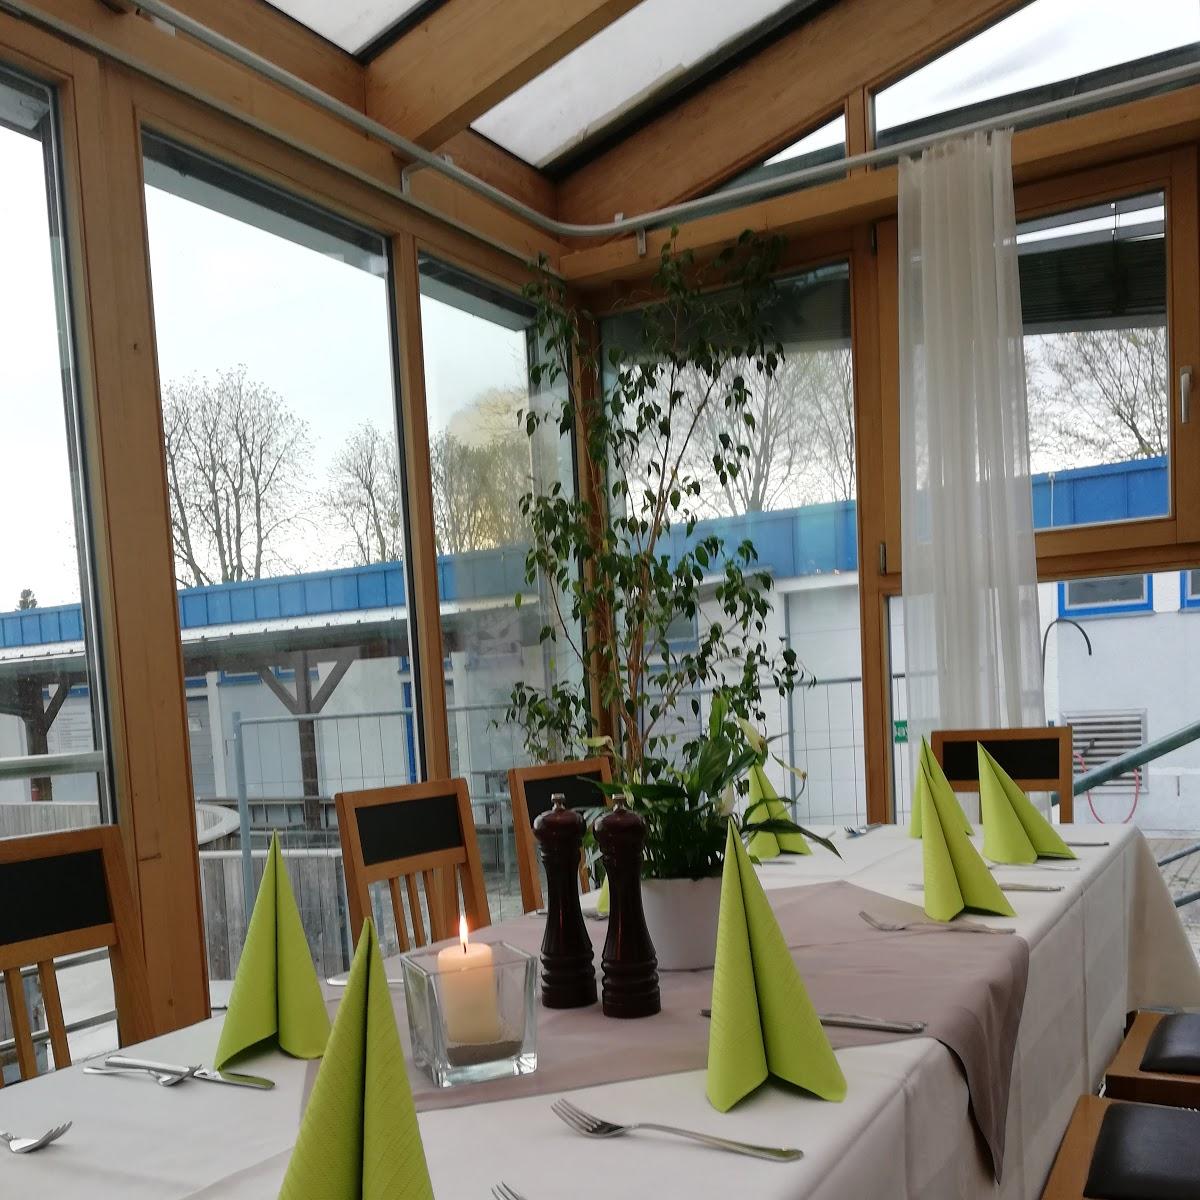 Restaurant "Sternenzelt - Restaurant Wintergarten" in  Inn